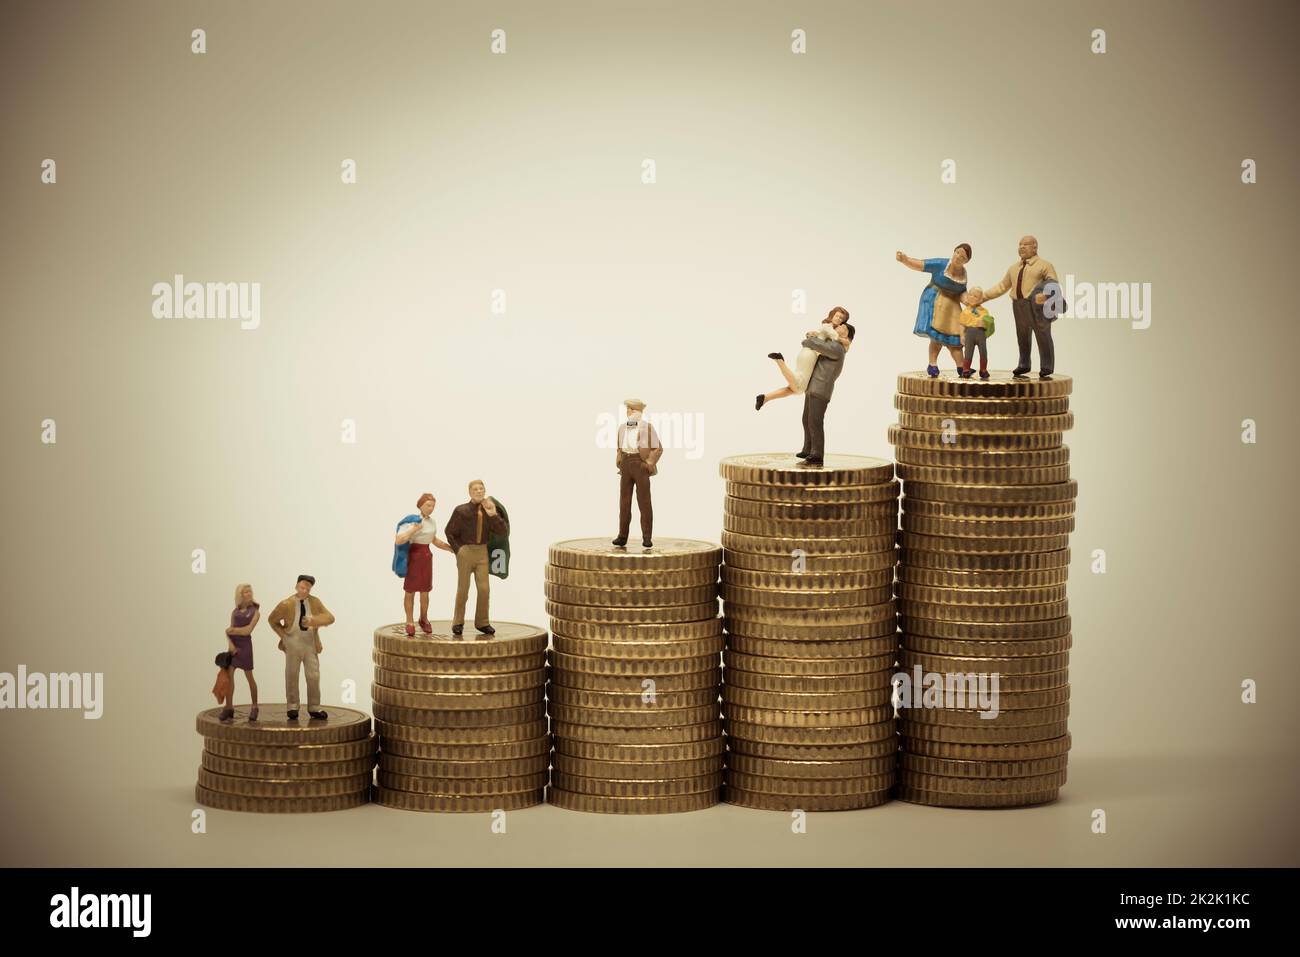 Concepto de escala social de varias personas en diferentes posiciones sobre pilas de monedas. Foto de stock